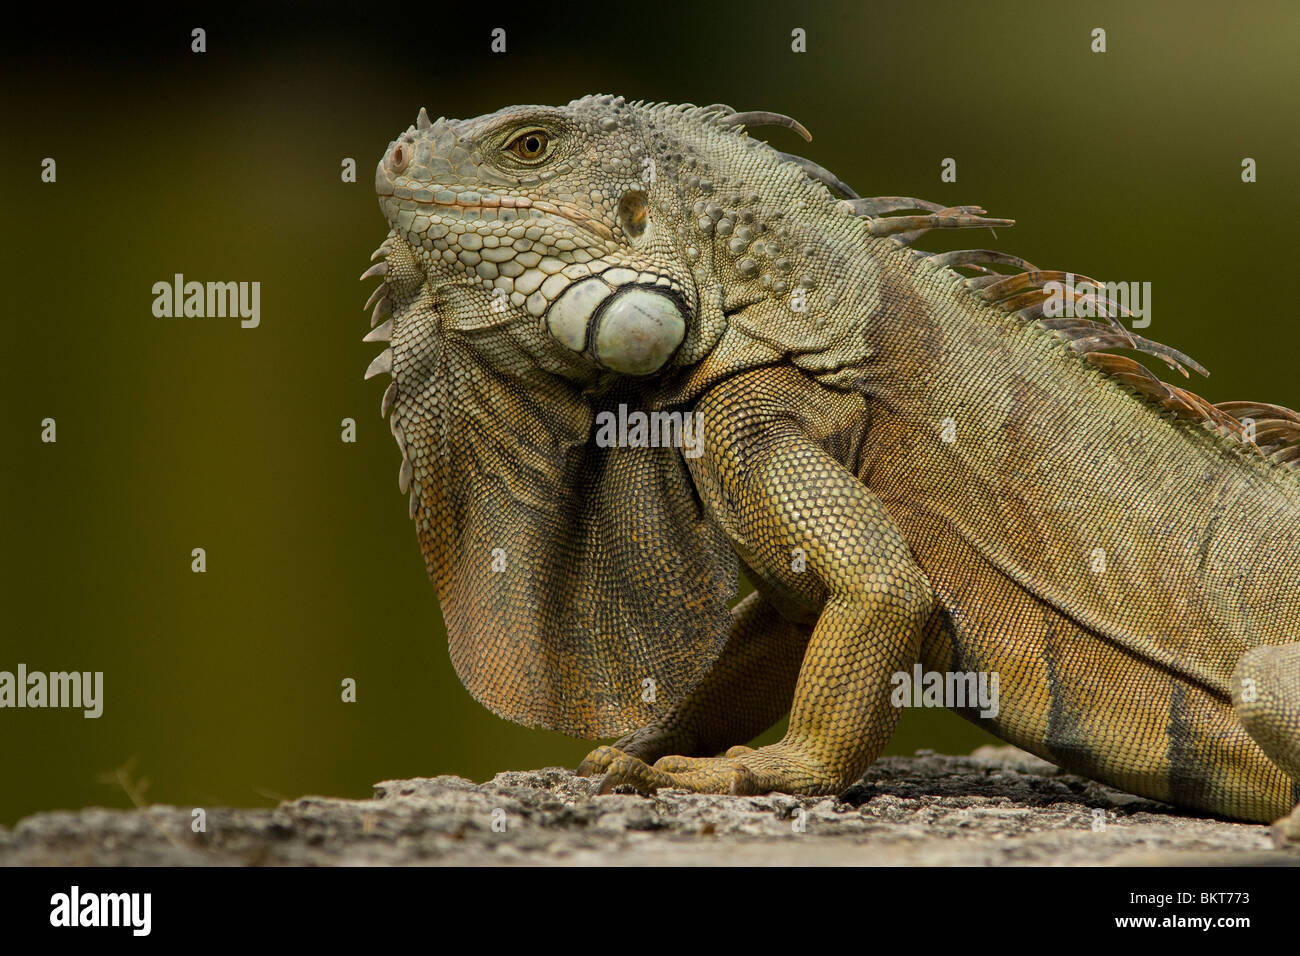 Groene leguaan, Iguana iguana, Green iguana Stock Photo